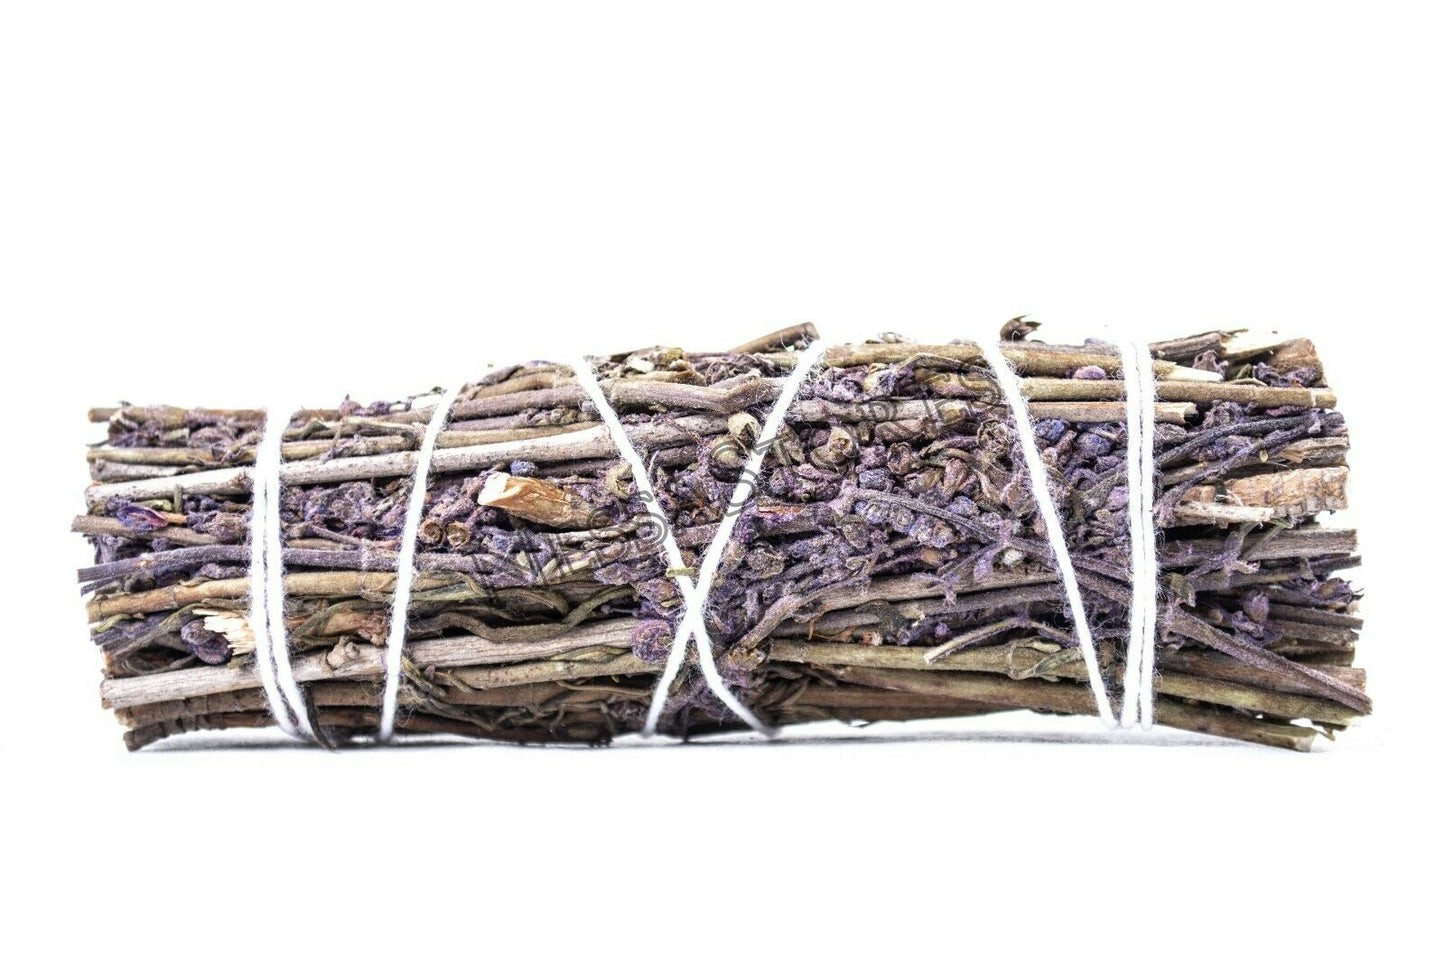 NessaStores Lavender Smudge Incense 4" Bundle (1 pc) #JC-144